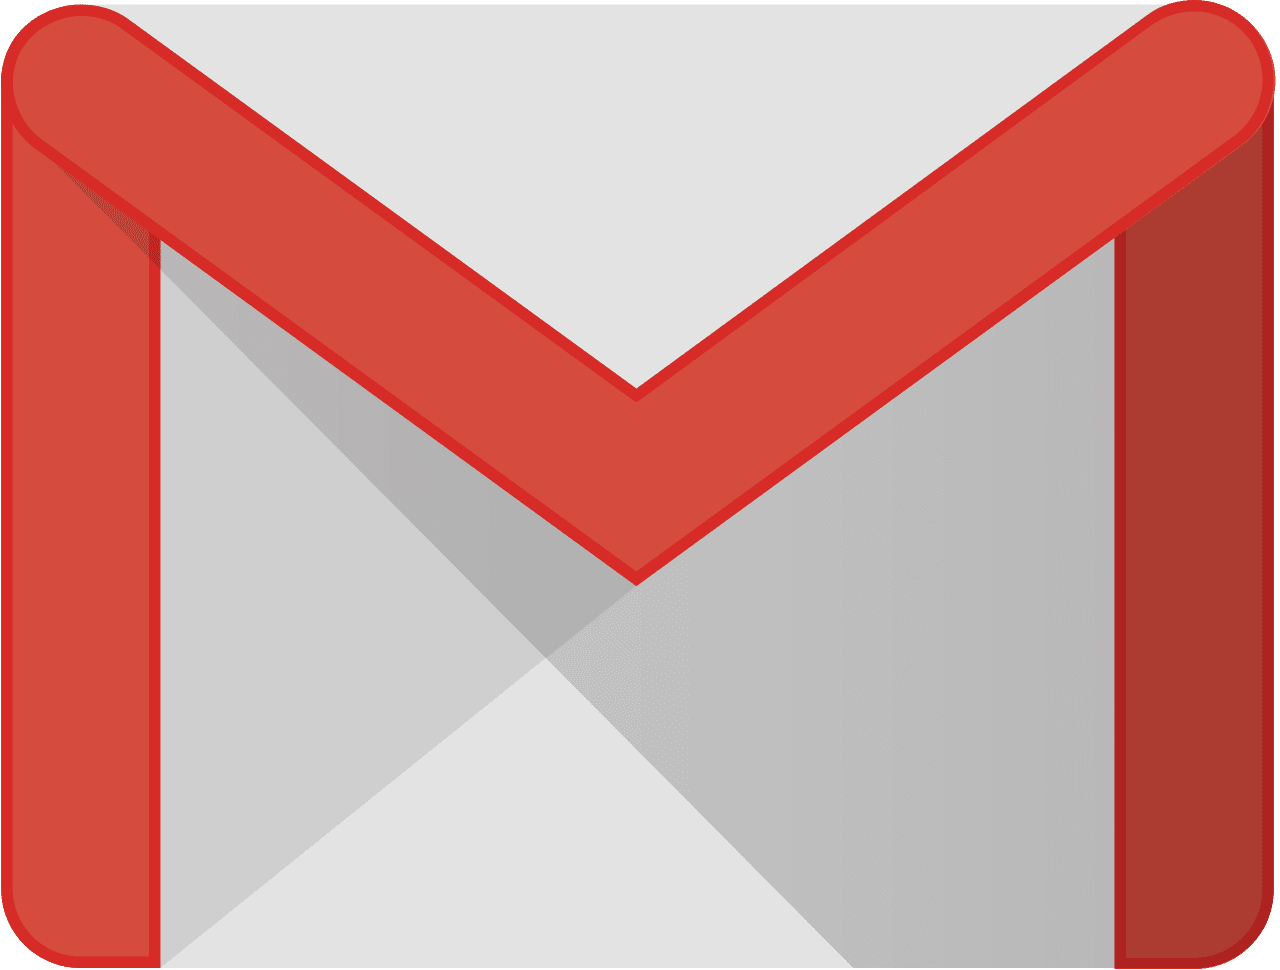 La nueva actualización de la app de Gmail incluye soporte para GIFs